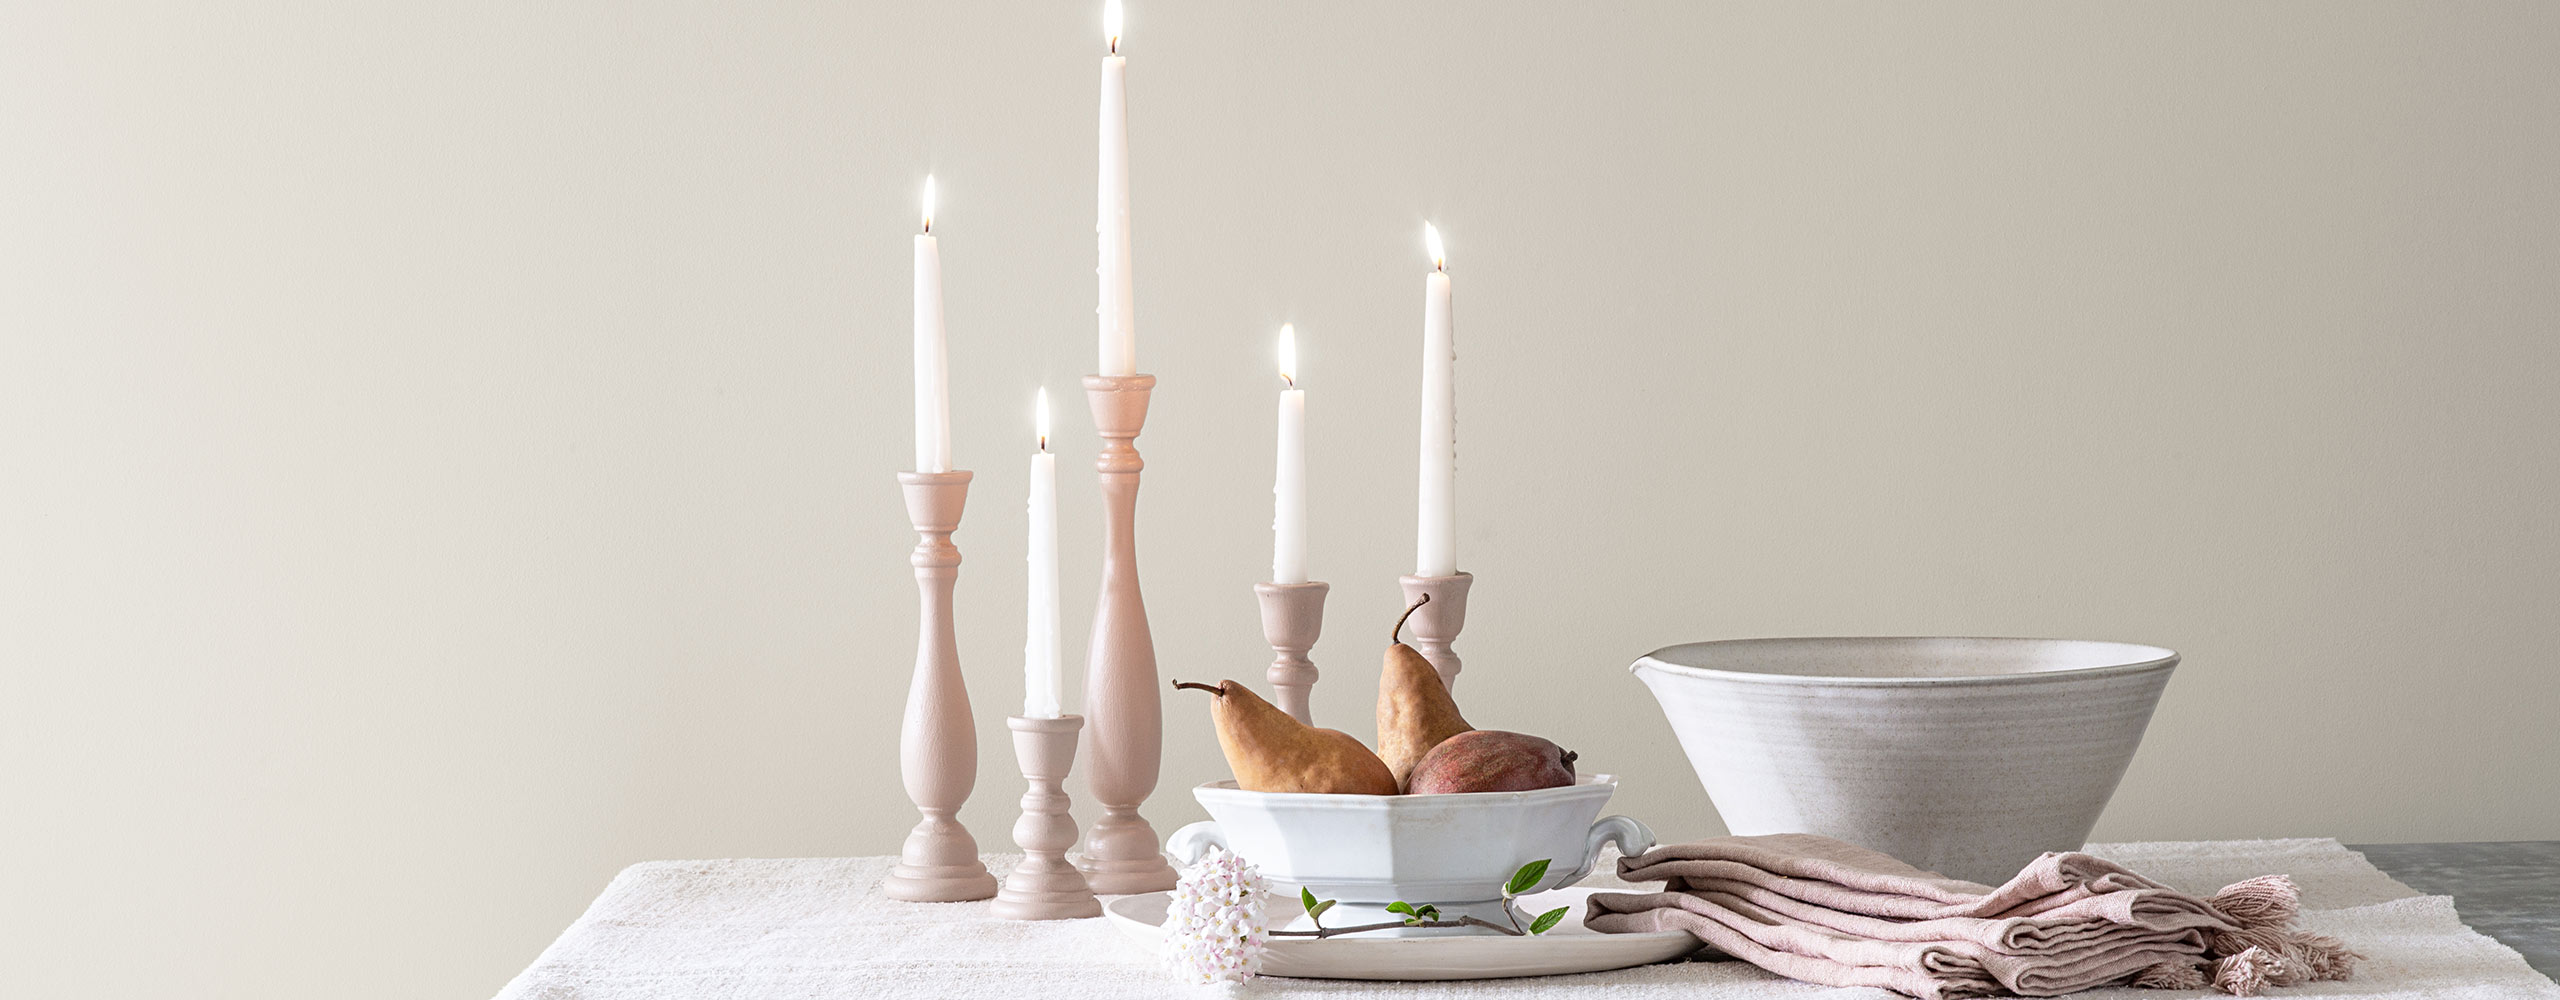 Des bougies effilées allumées, deux bols en porcelaine blanche et des serviettes en tissu blanc cassé sont posés sur une table contre un mur peint en blanc.